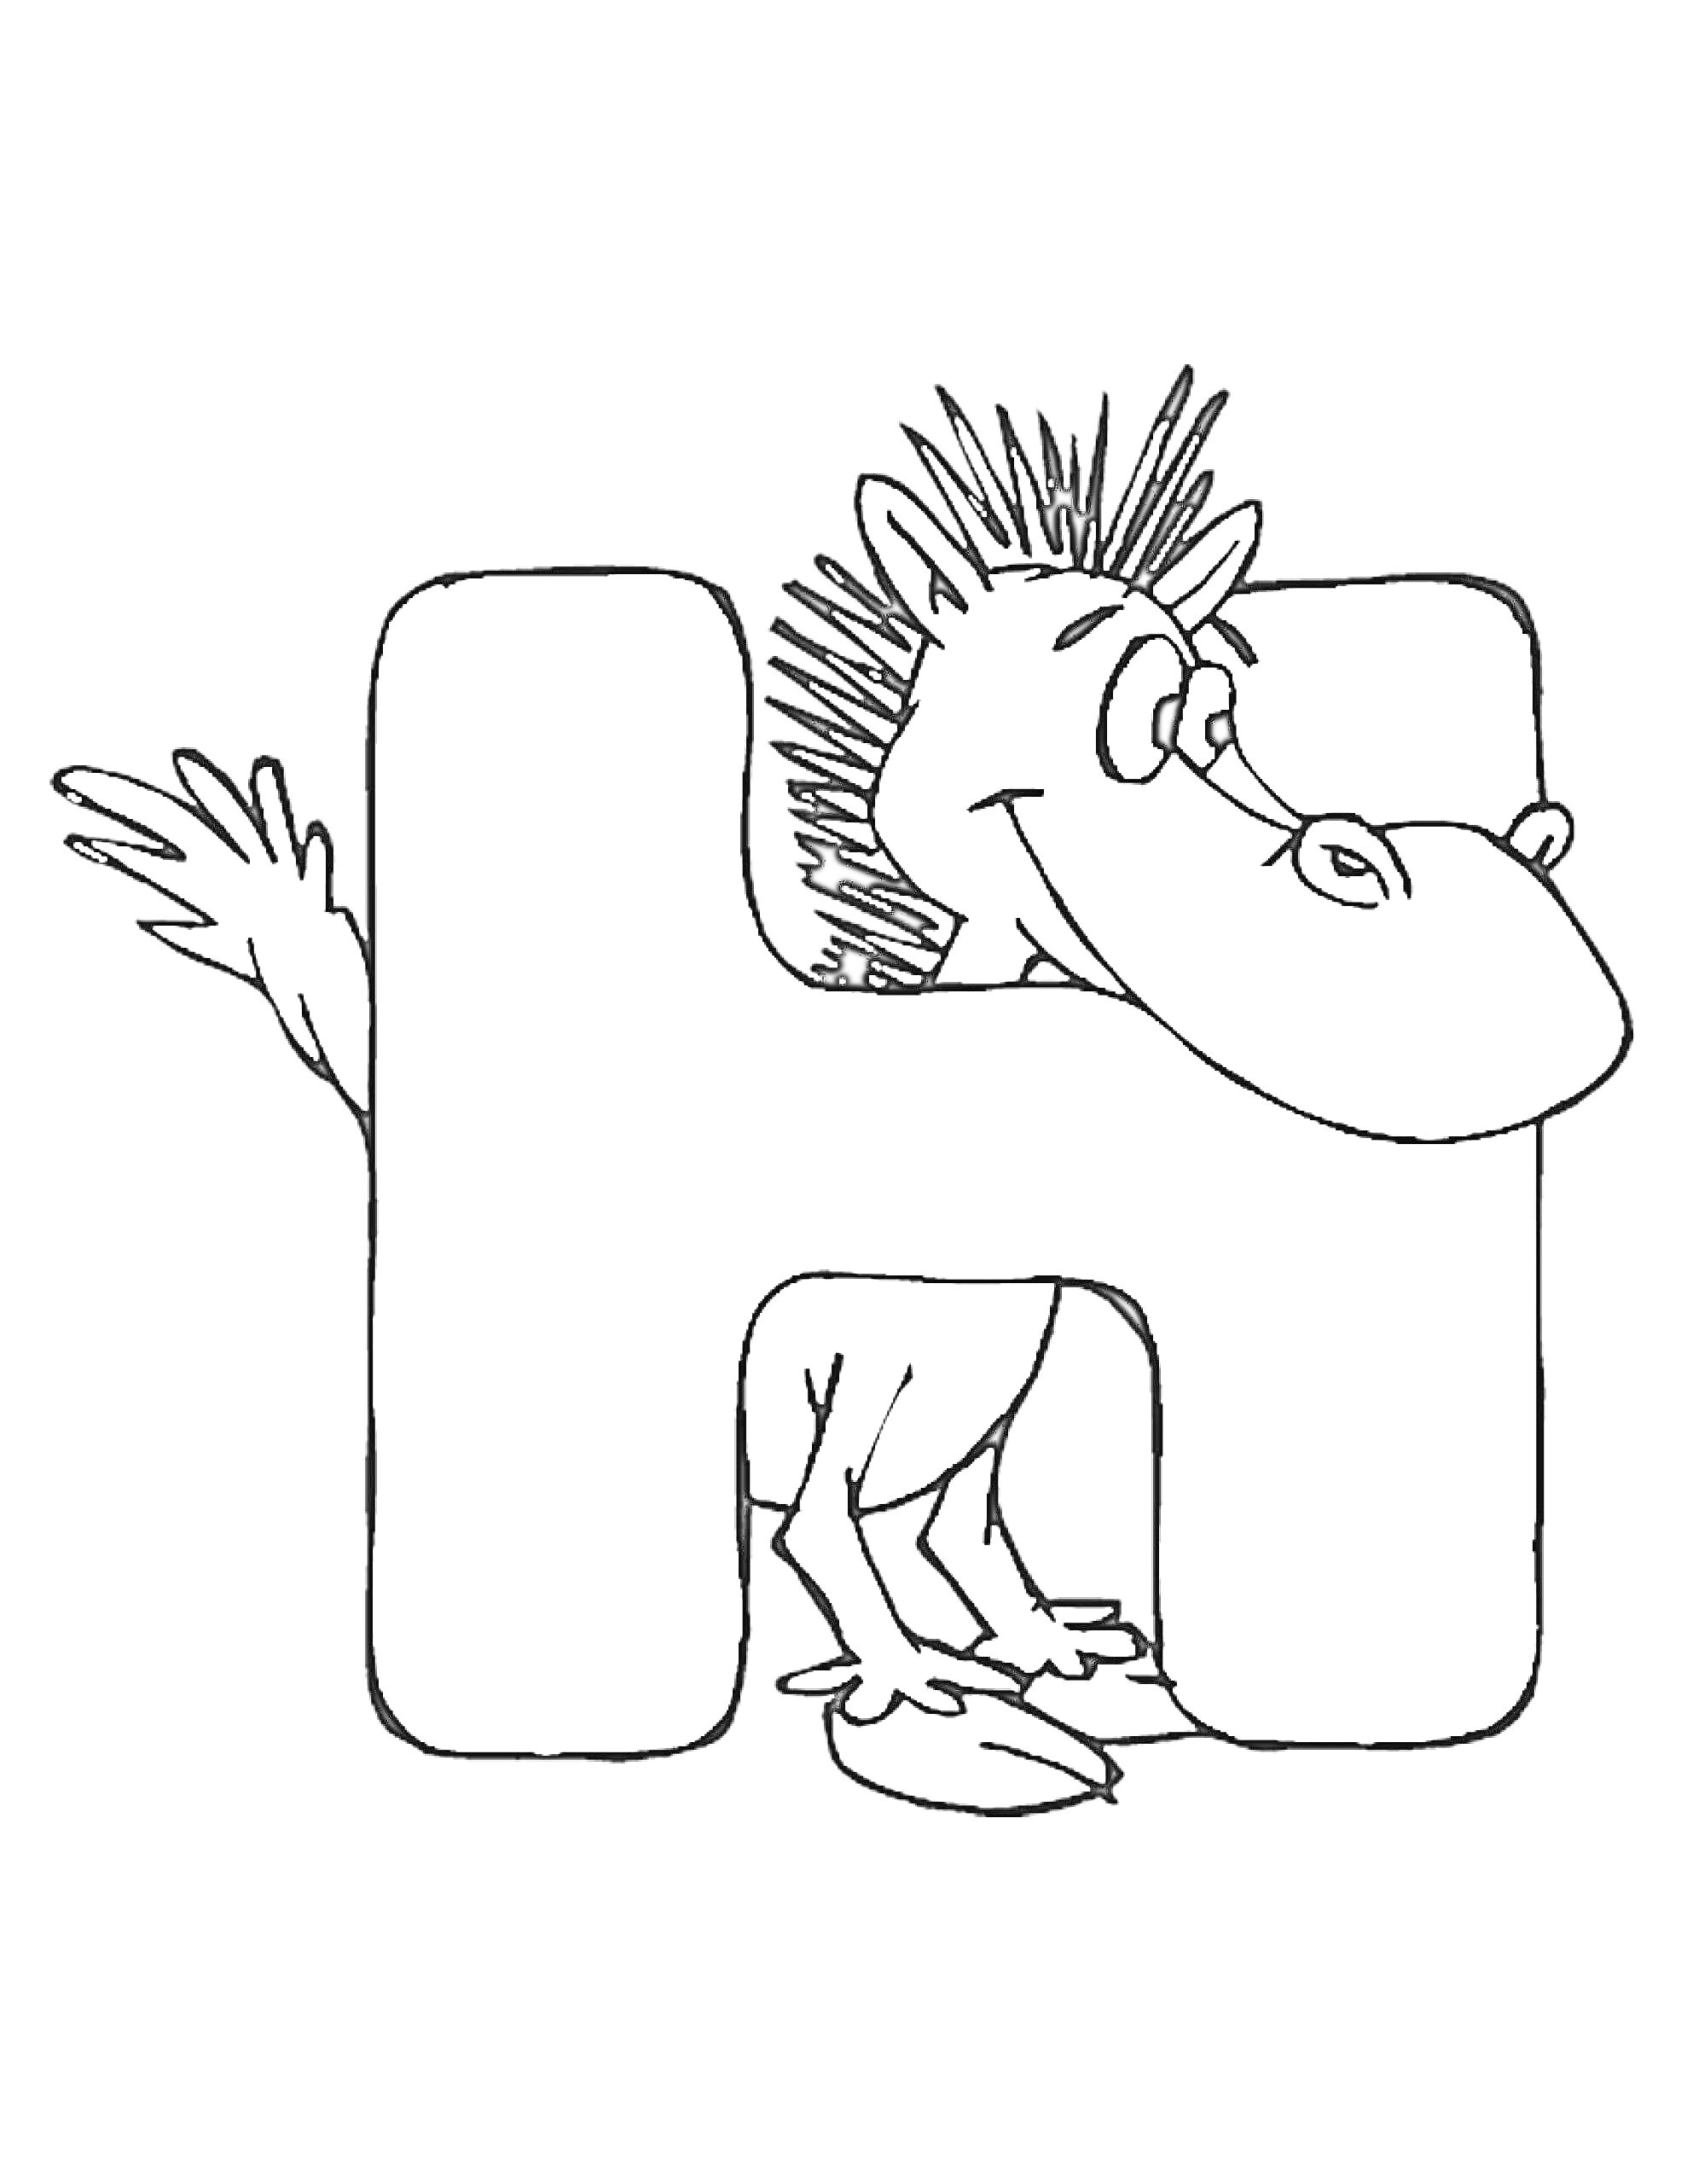 Буква H с мифическим существом (дракончиком) выходящим из буквы